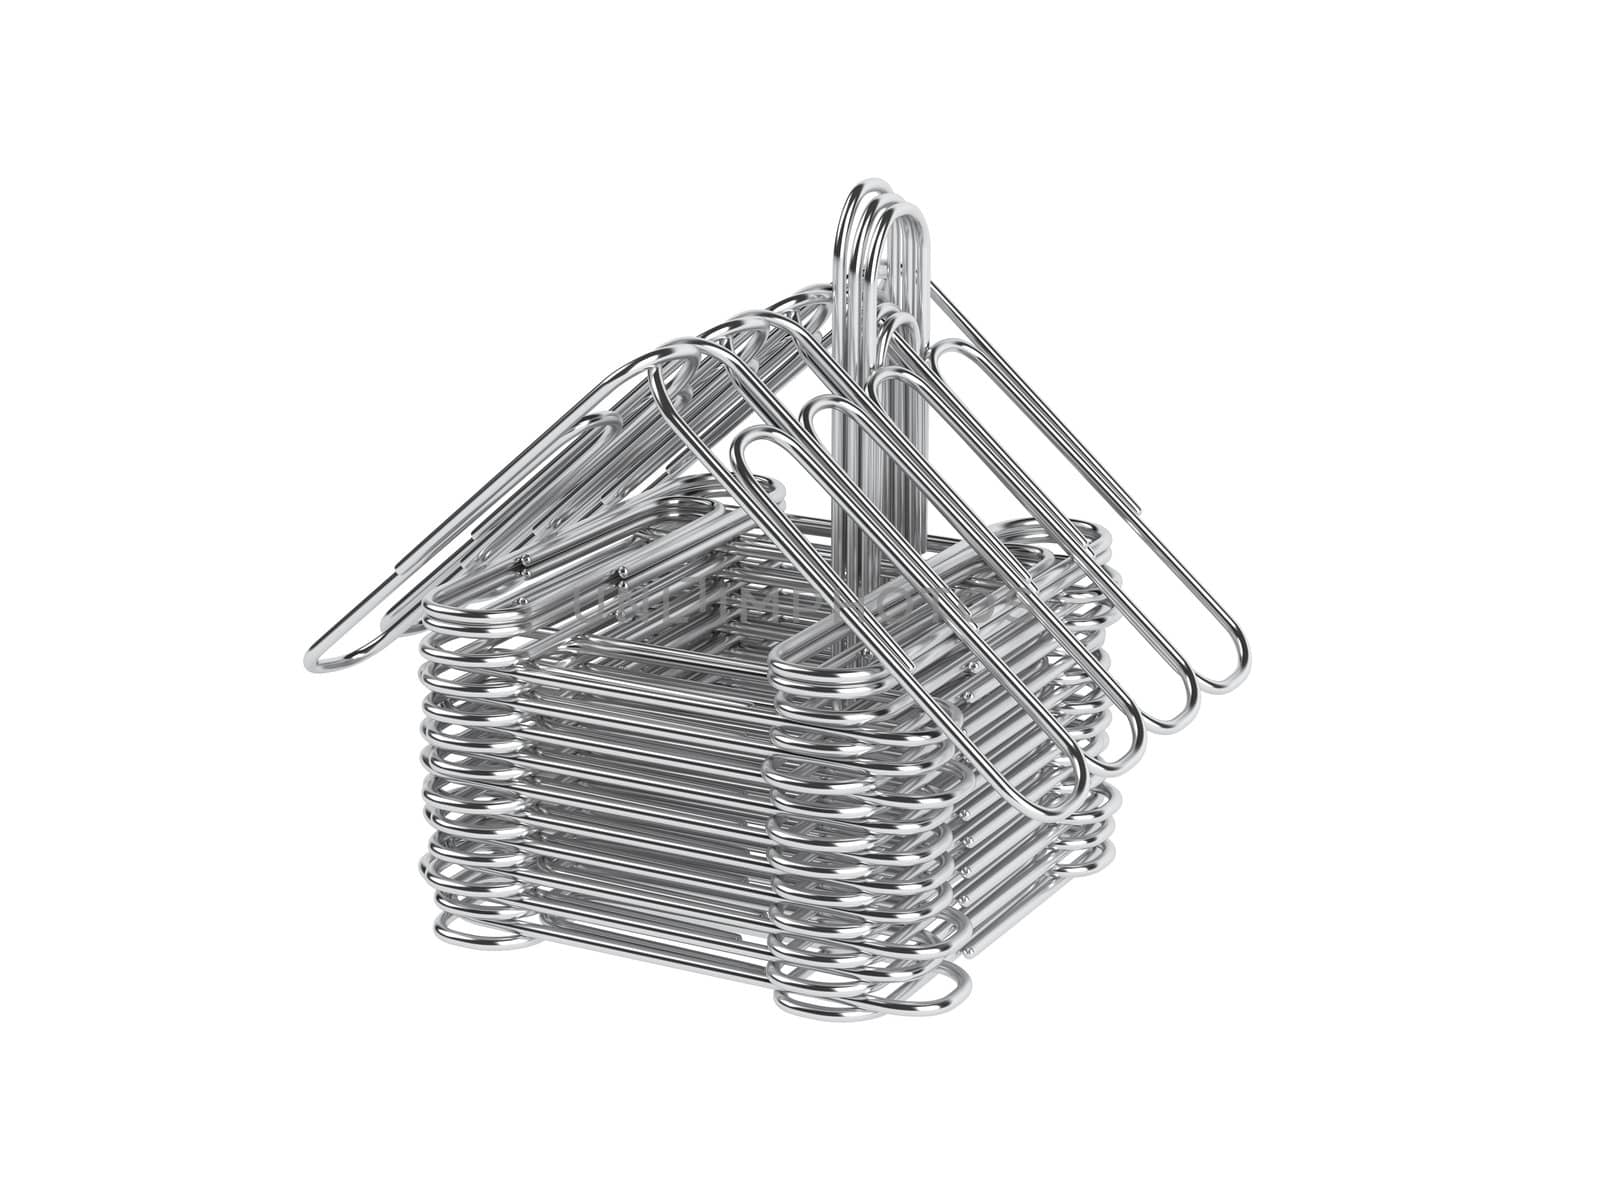 Paper clips house by AlexanderMorozov